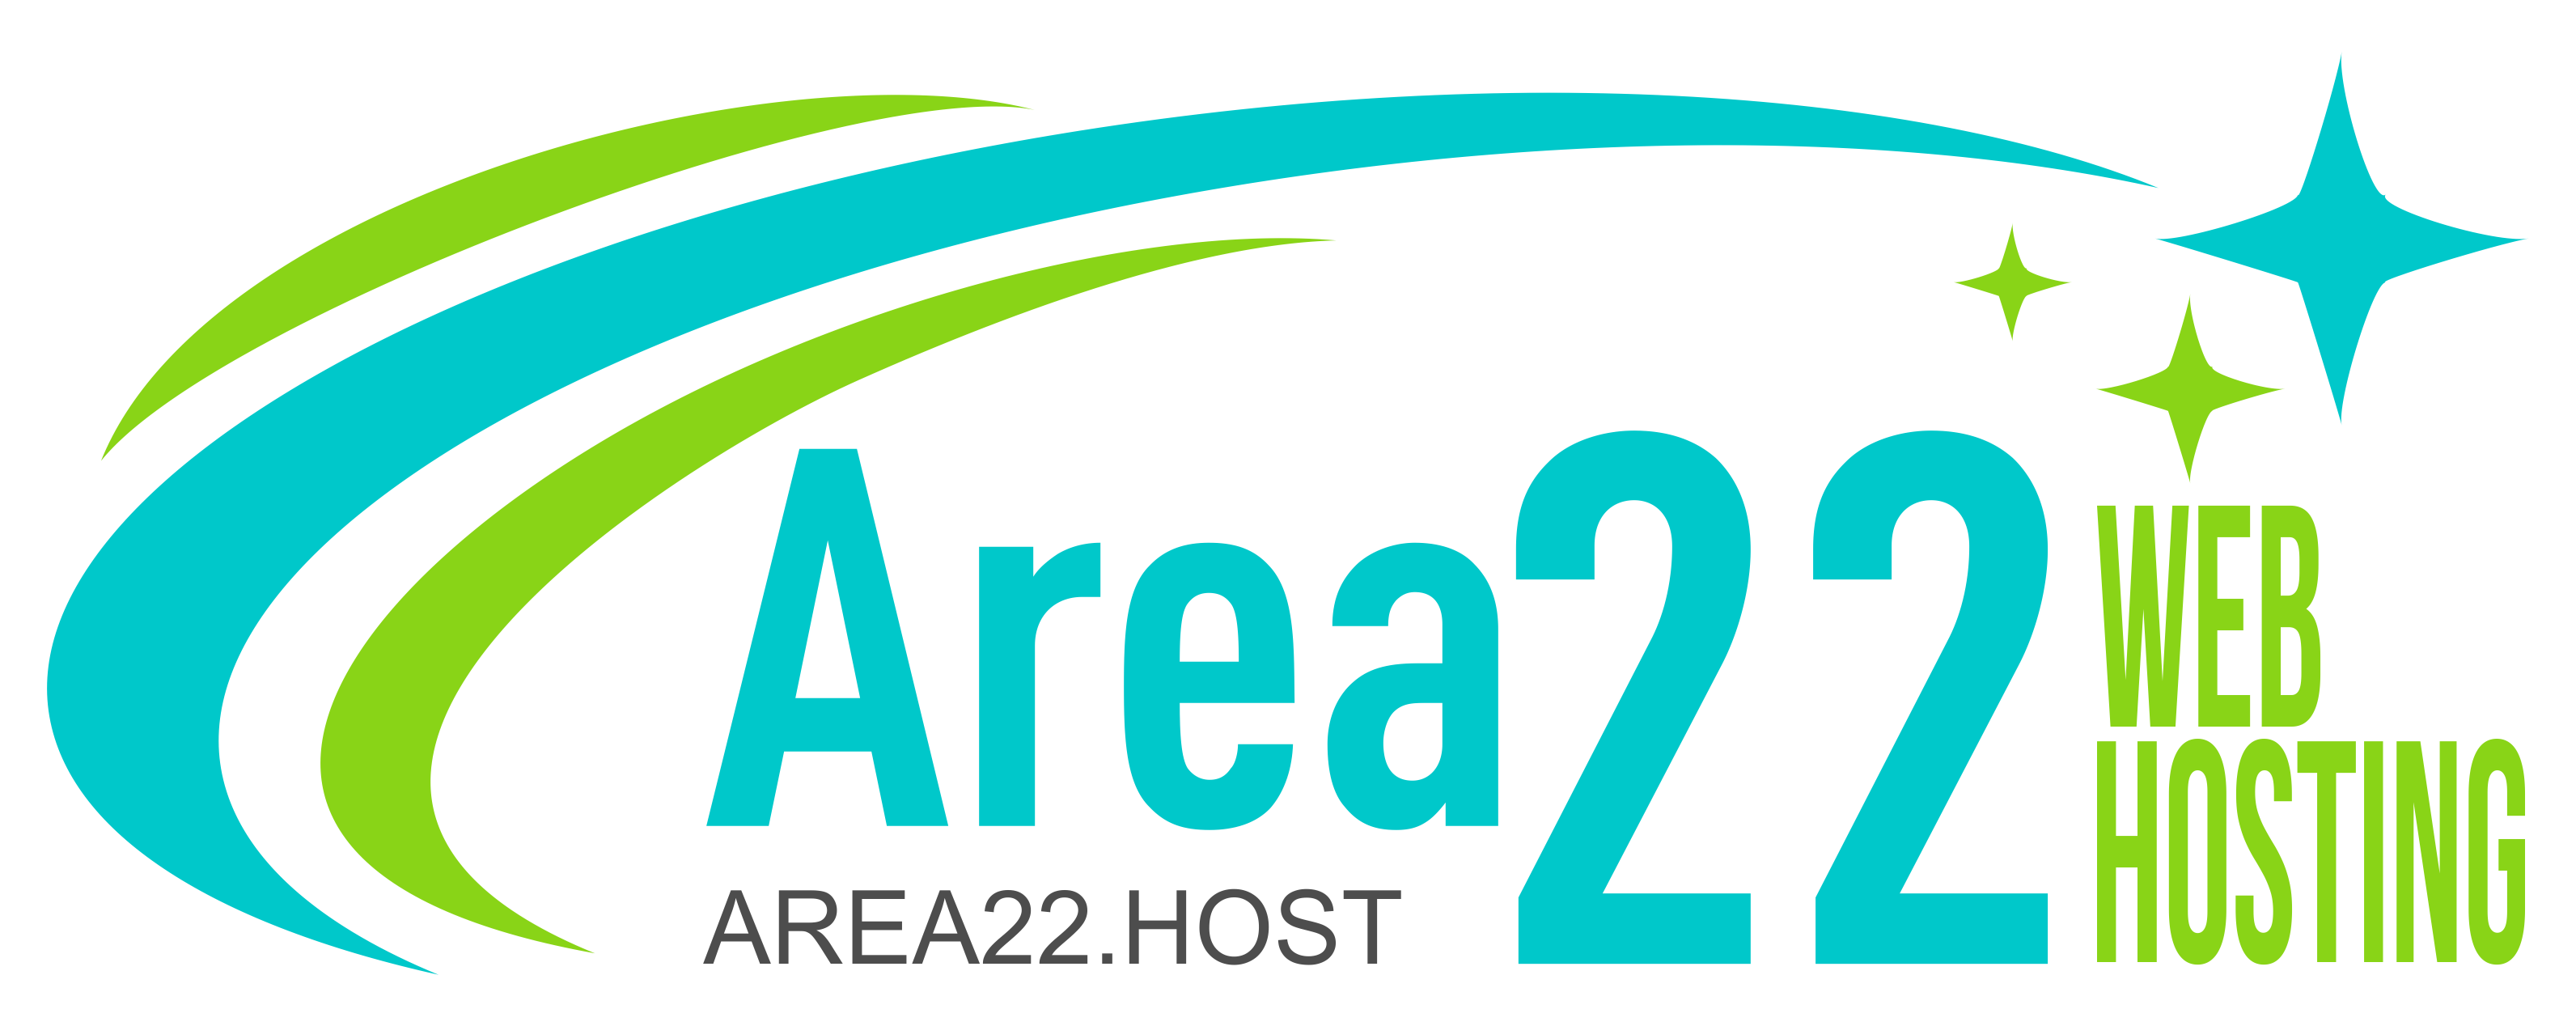 Area22 Web Hosting logo